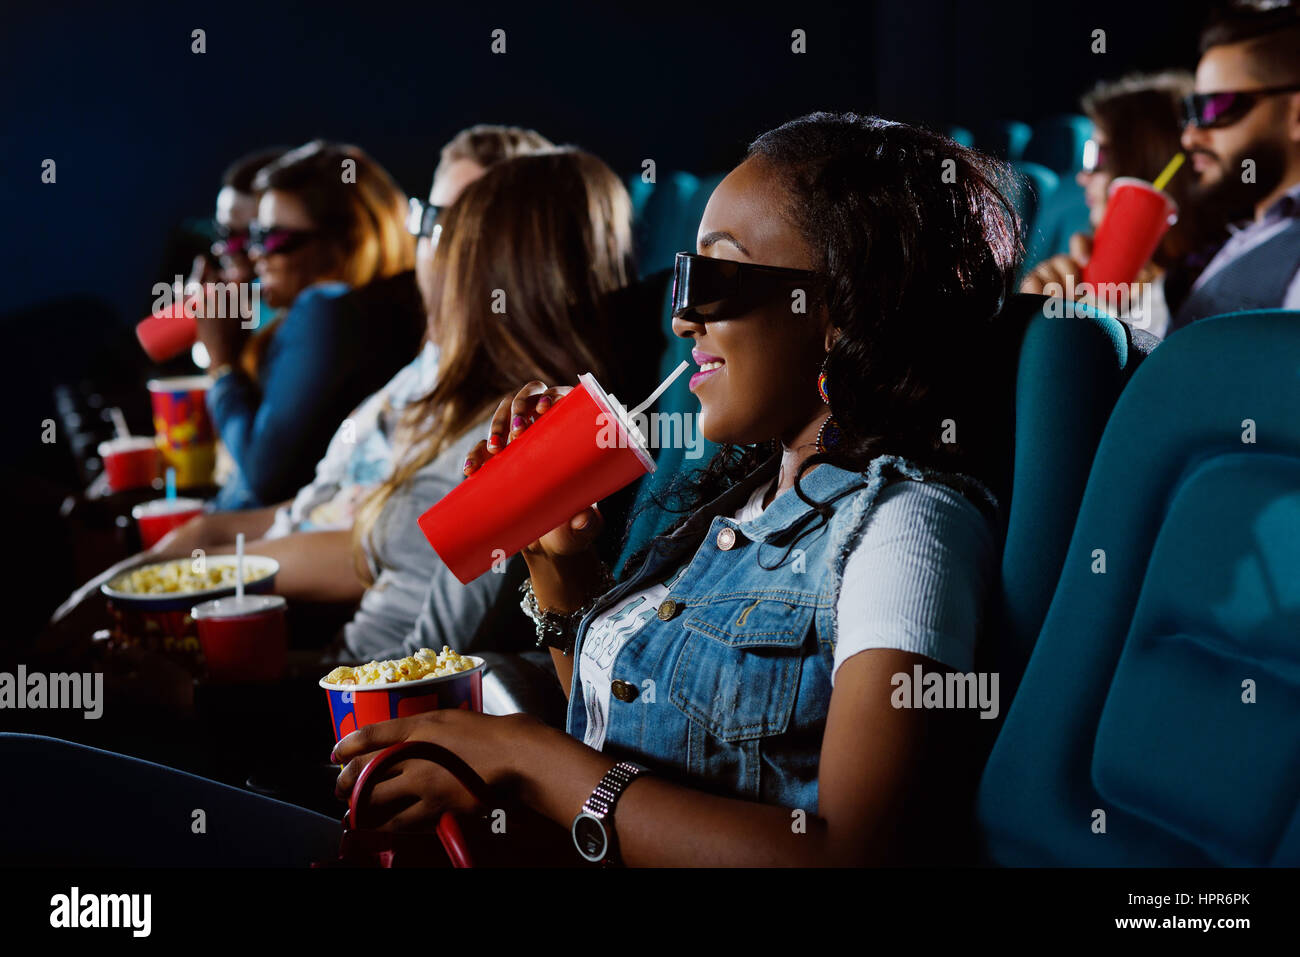 Ravie de voir le nouveau film. Jeune femme africaine en sirotant son verre en regardant un film au cinema Banque D'Images